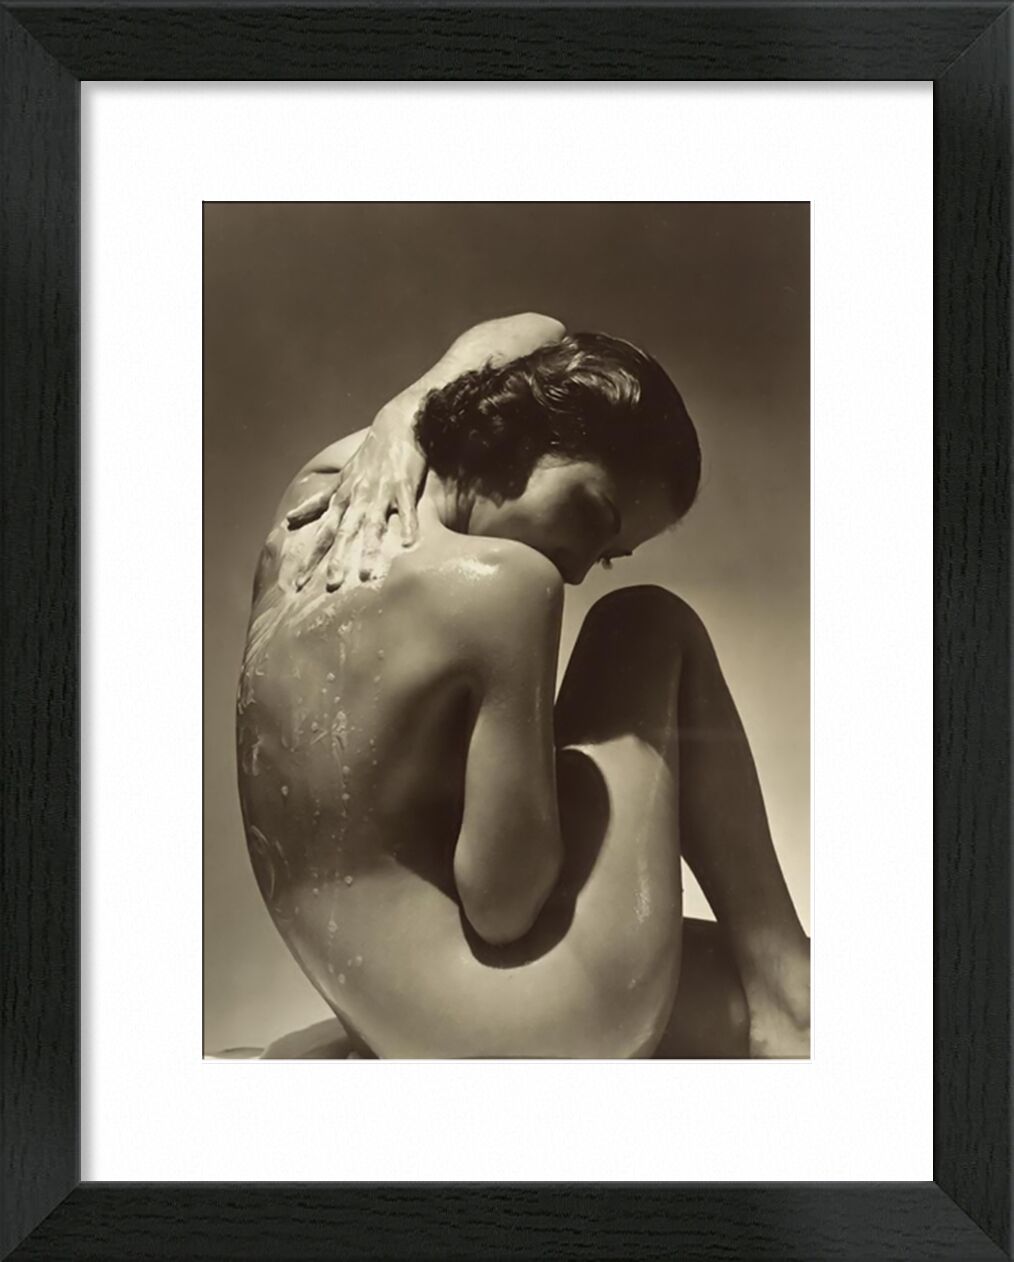 Back - Edward Steichen 1923 von Bildende Kunst, Prodi Art, Dusche, savon, edward steichen, Frau, zwei, nackt